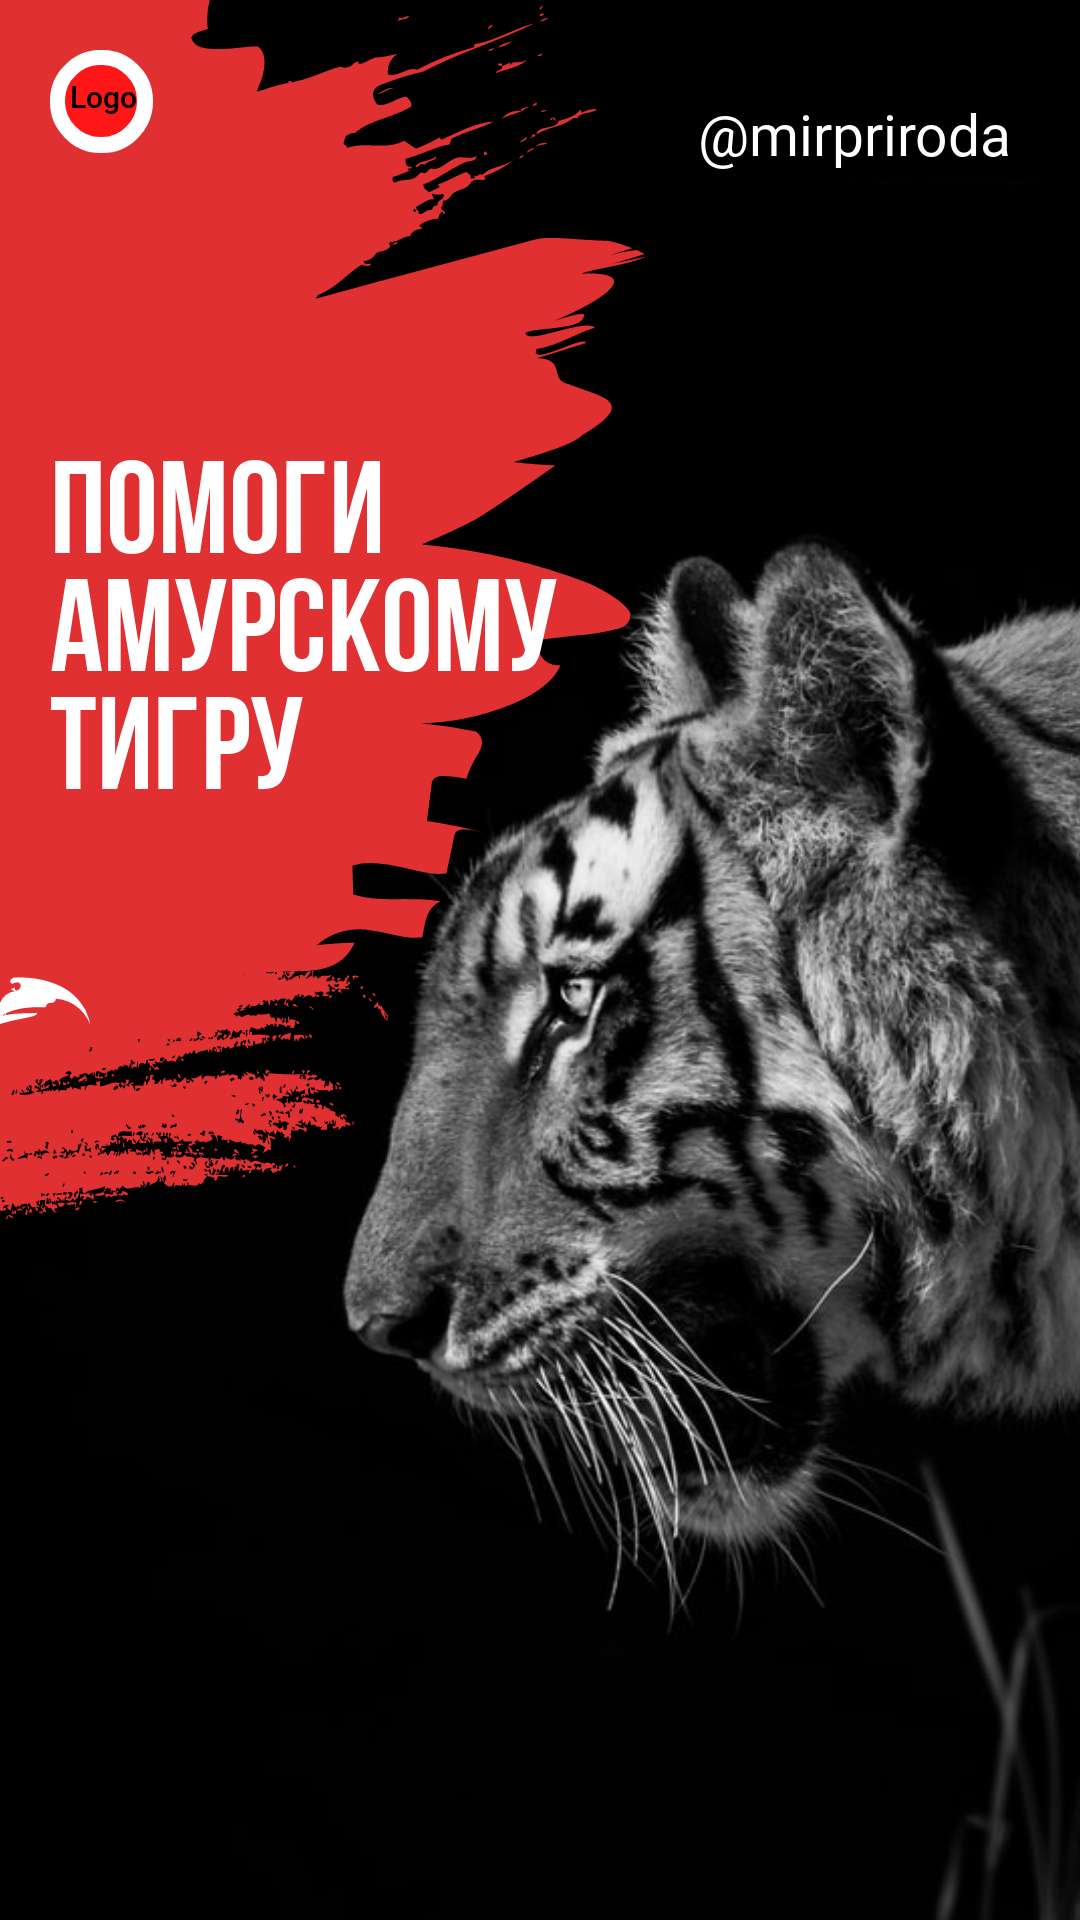 Контрастный красно-черный сторис с крупным портретом амурского тигра в профиль